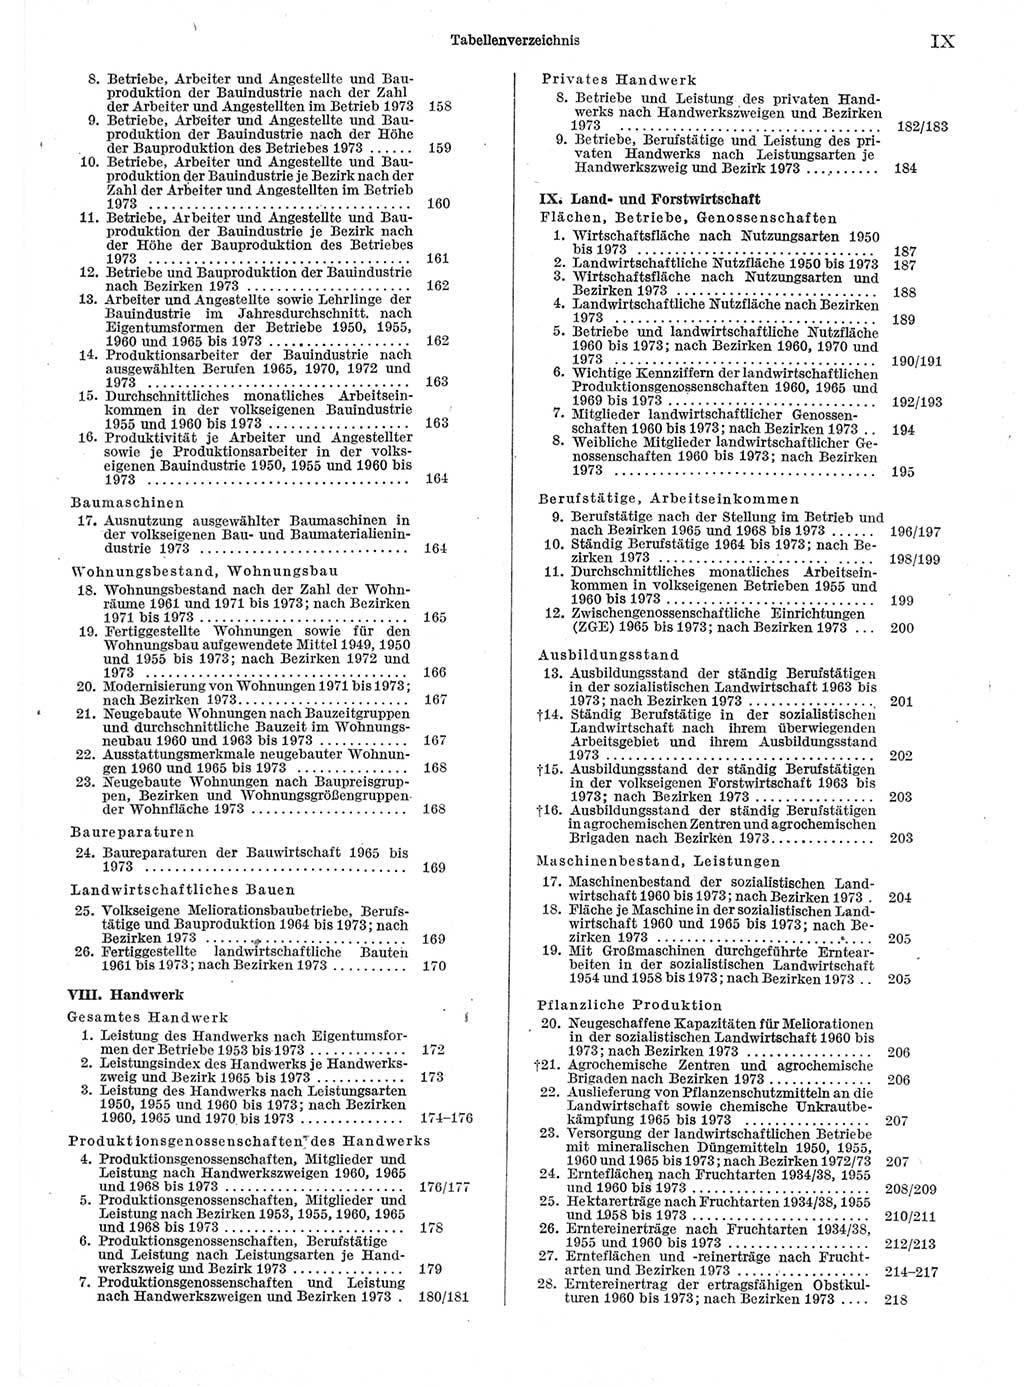 Statistisches Jahrbuch der Deutschen Demokratischen Republik (DDR) 1974, Seite 9 (Stat. Jb. DDR 1974, S. 9)